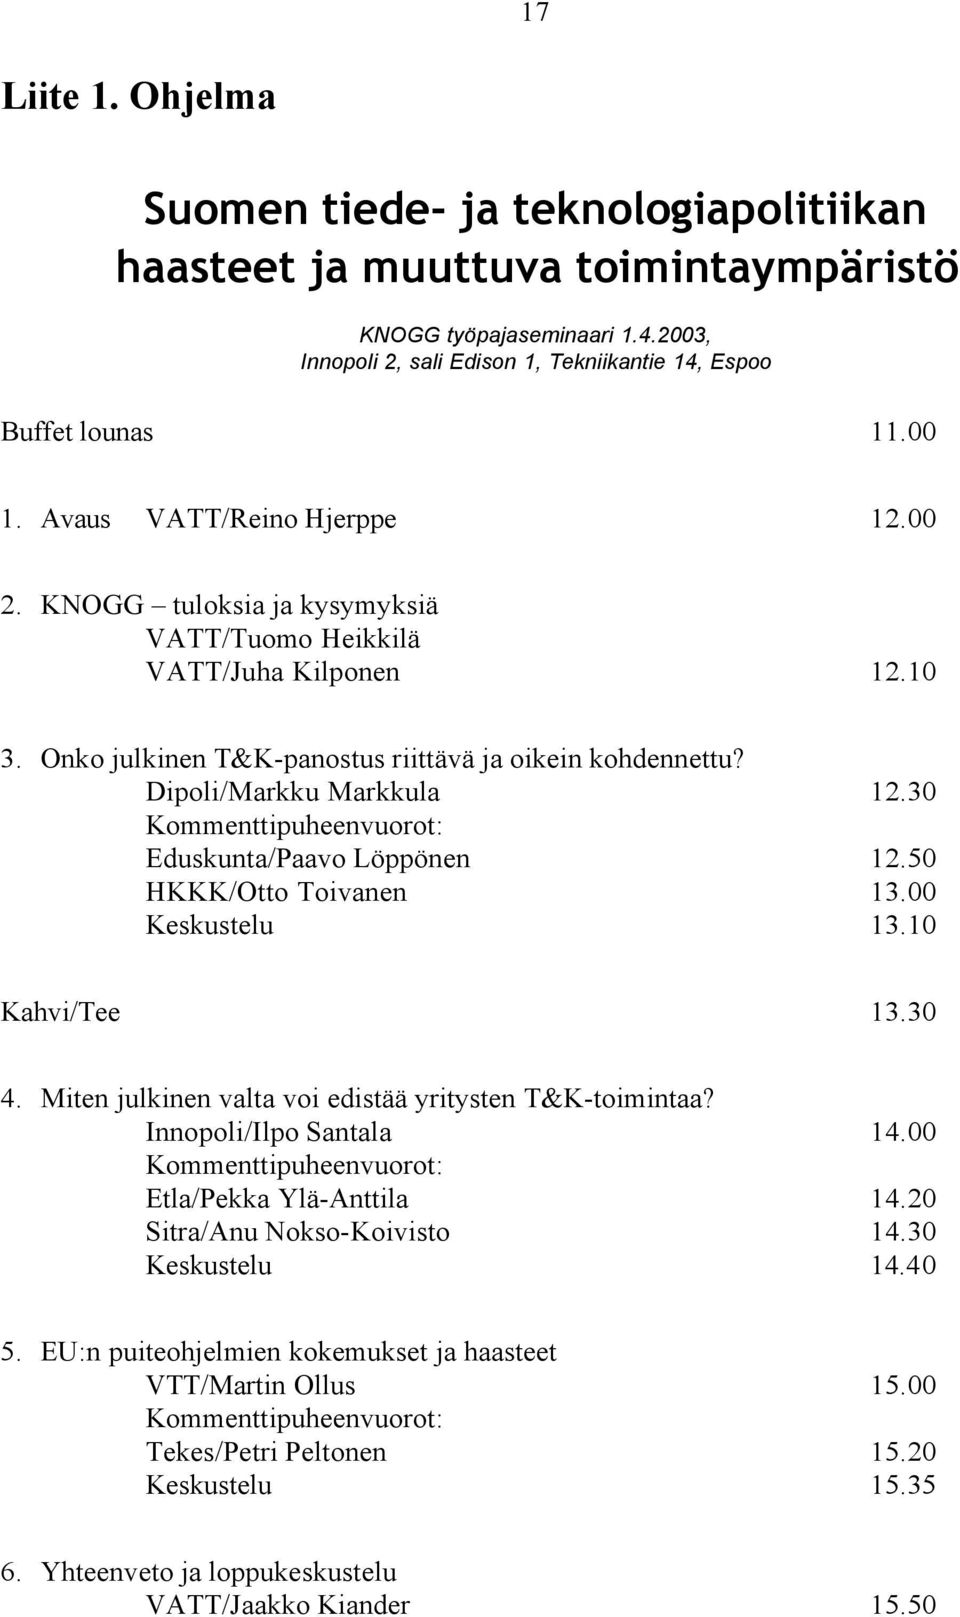 Dipoli/Markku Markkula 12.30 Kommenttipuheenvuorot: Eduskunta/Paavo Löppönen 12.50 HKKK/Otto Toivanen 13.00 Keskustelu 13.10 Kahvi/Tee 13.30 4.